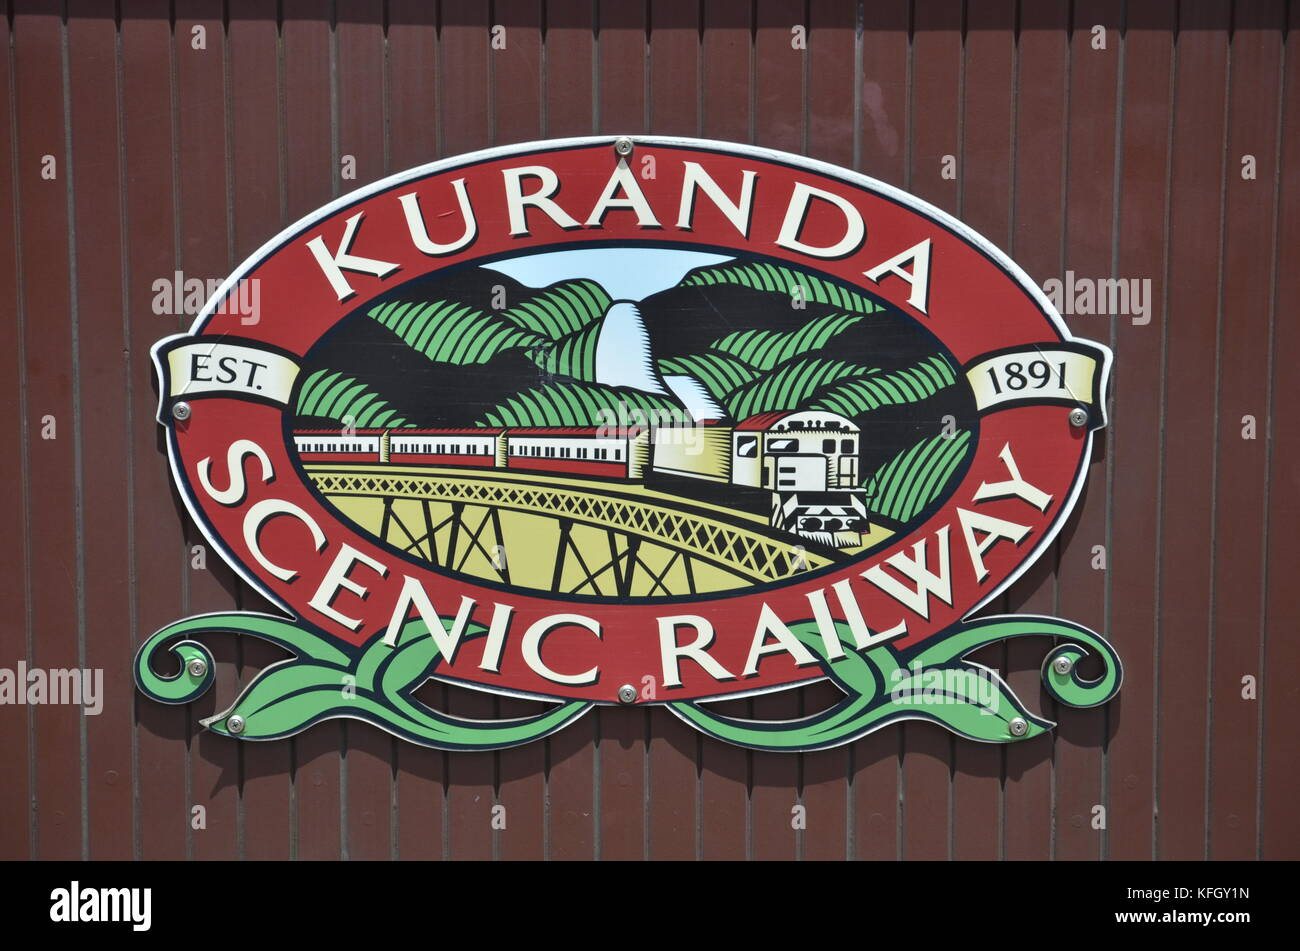 Un logo sur un chariot élévateur sur le Kuranda Scenic Railway. Construit entre 1886 et 1891, le chemin de fer relie de Cairns à Kuranda via l'eau douce dans le Queensland. Banque D'Images